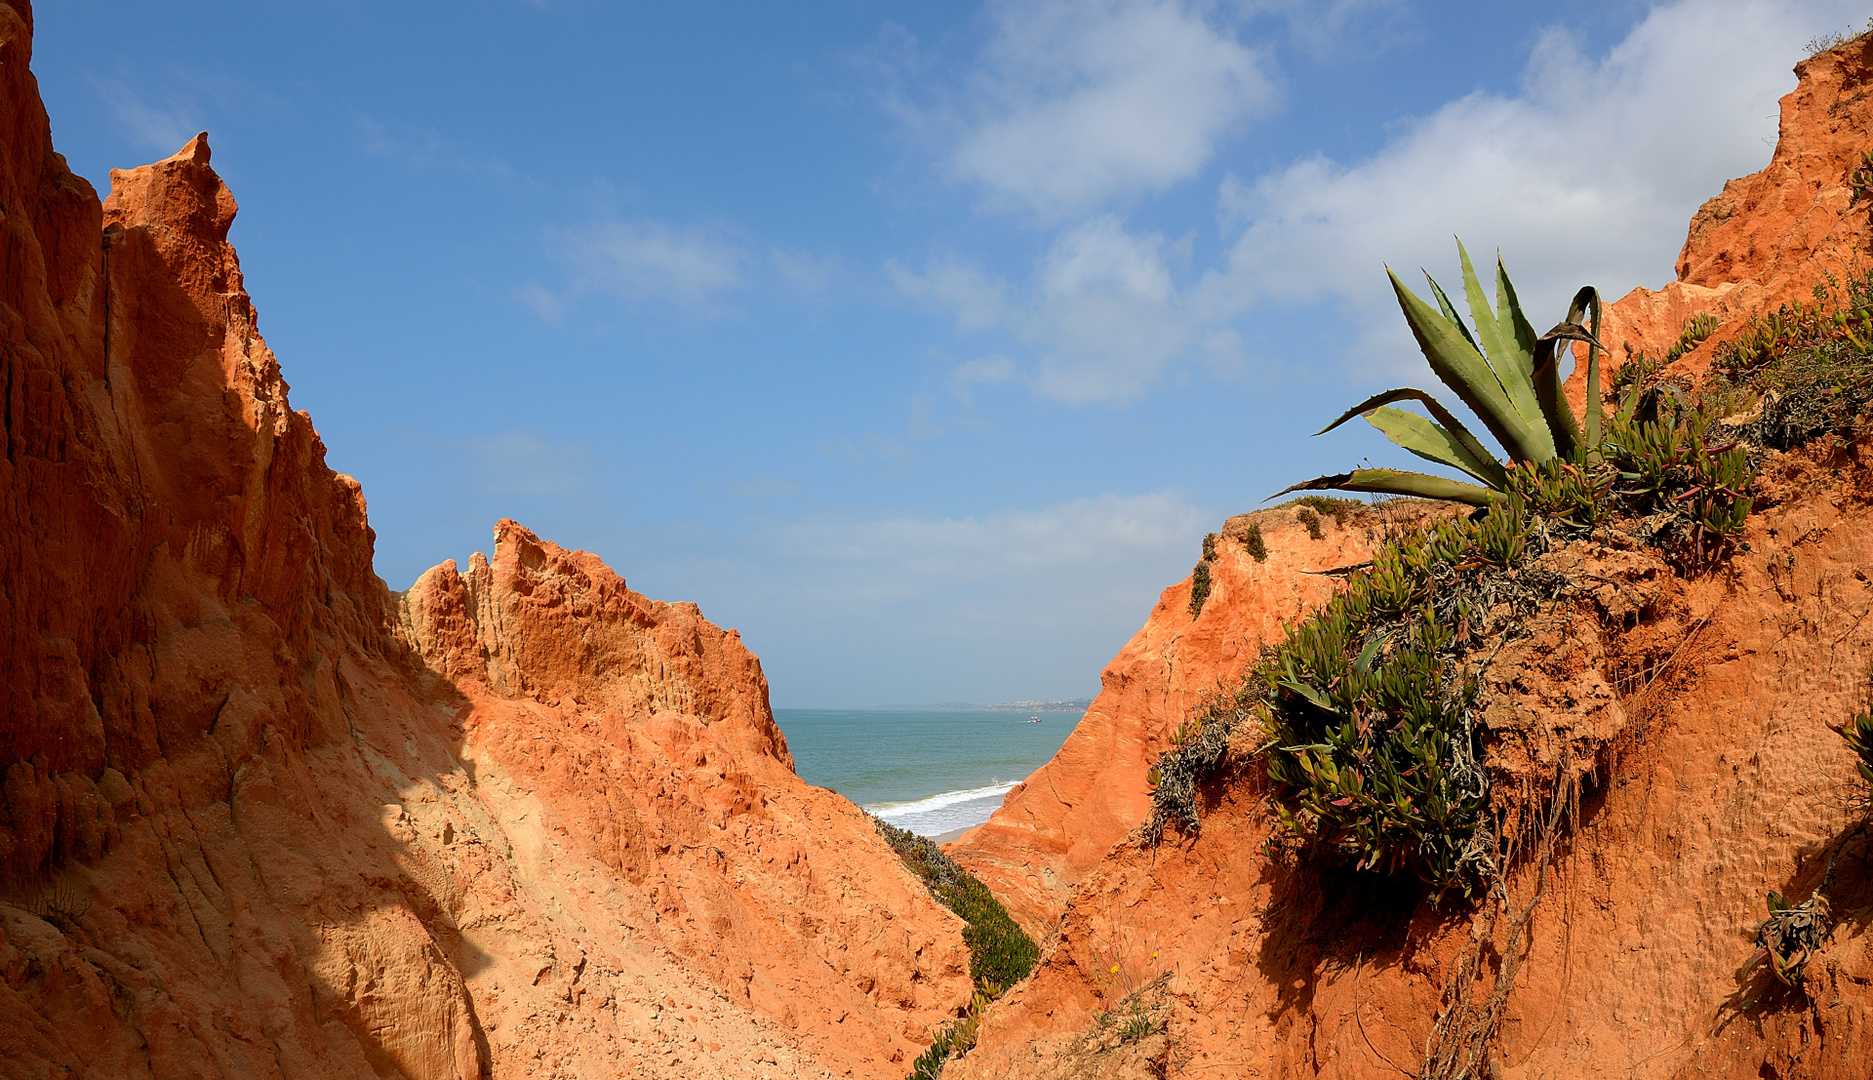  Farblich ein Traum, die Sandsteilküste von Praia da Falesia (Algarve) in Portugal.